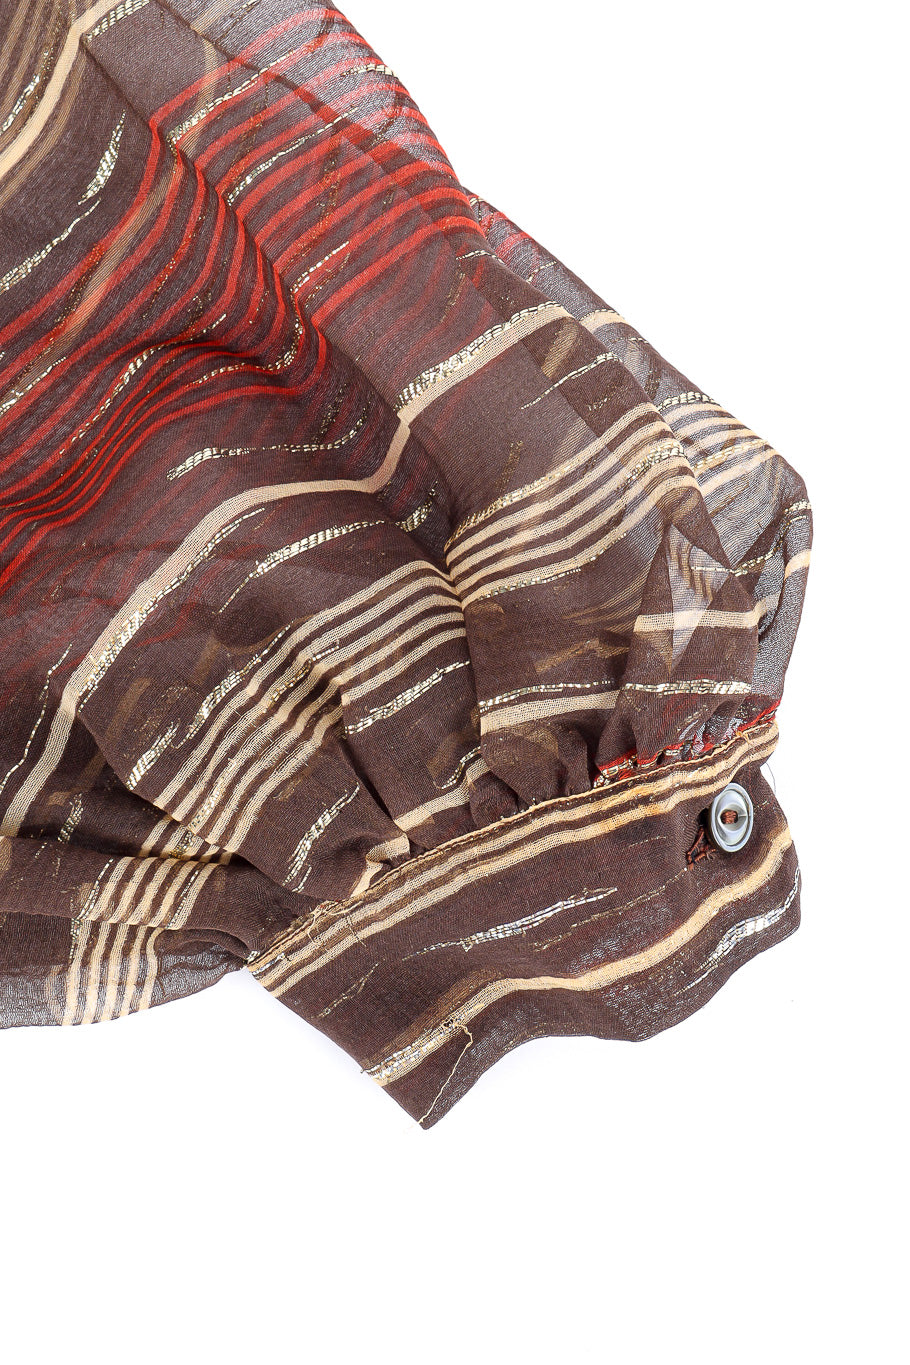 Airy fine lamé striped silk chiffon peasant blouse by Saint Laurent button closure close @recessla